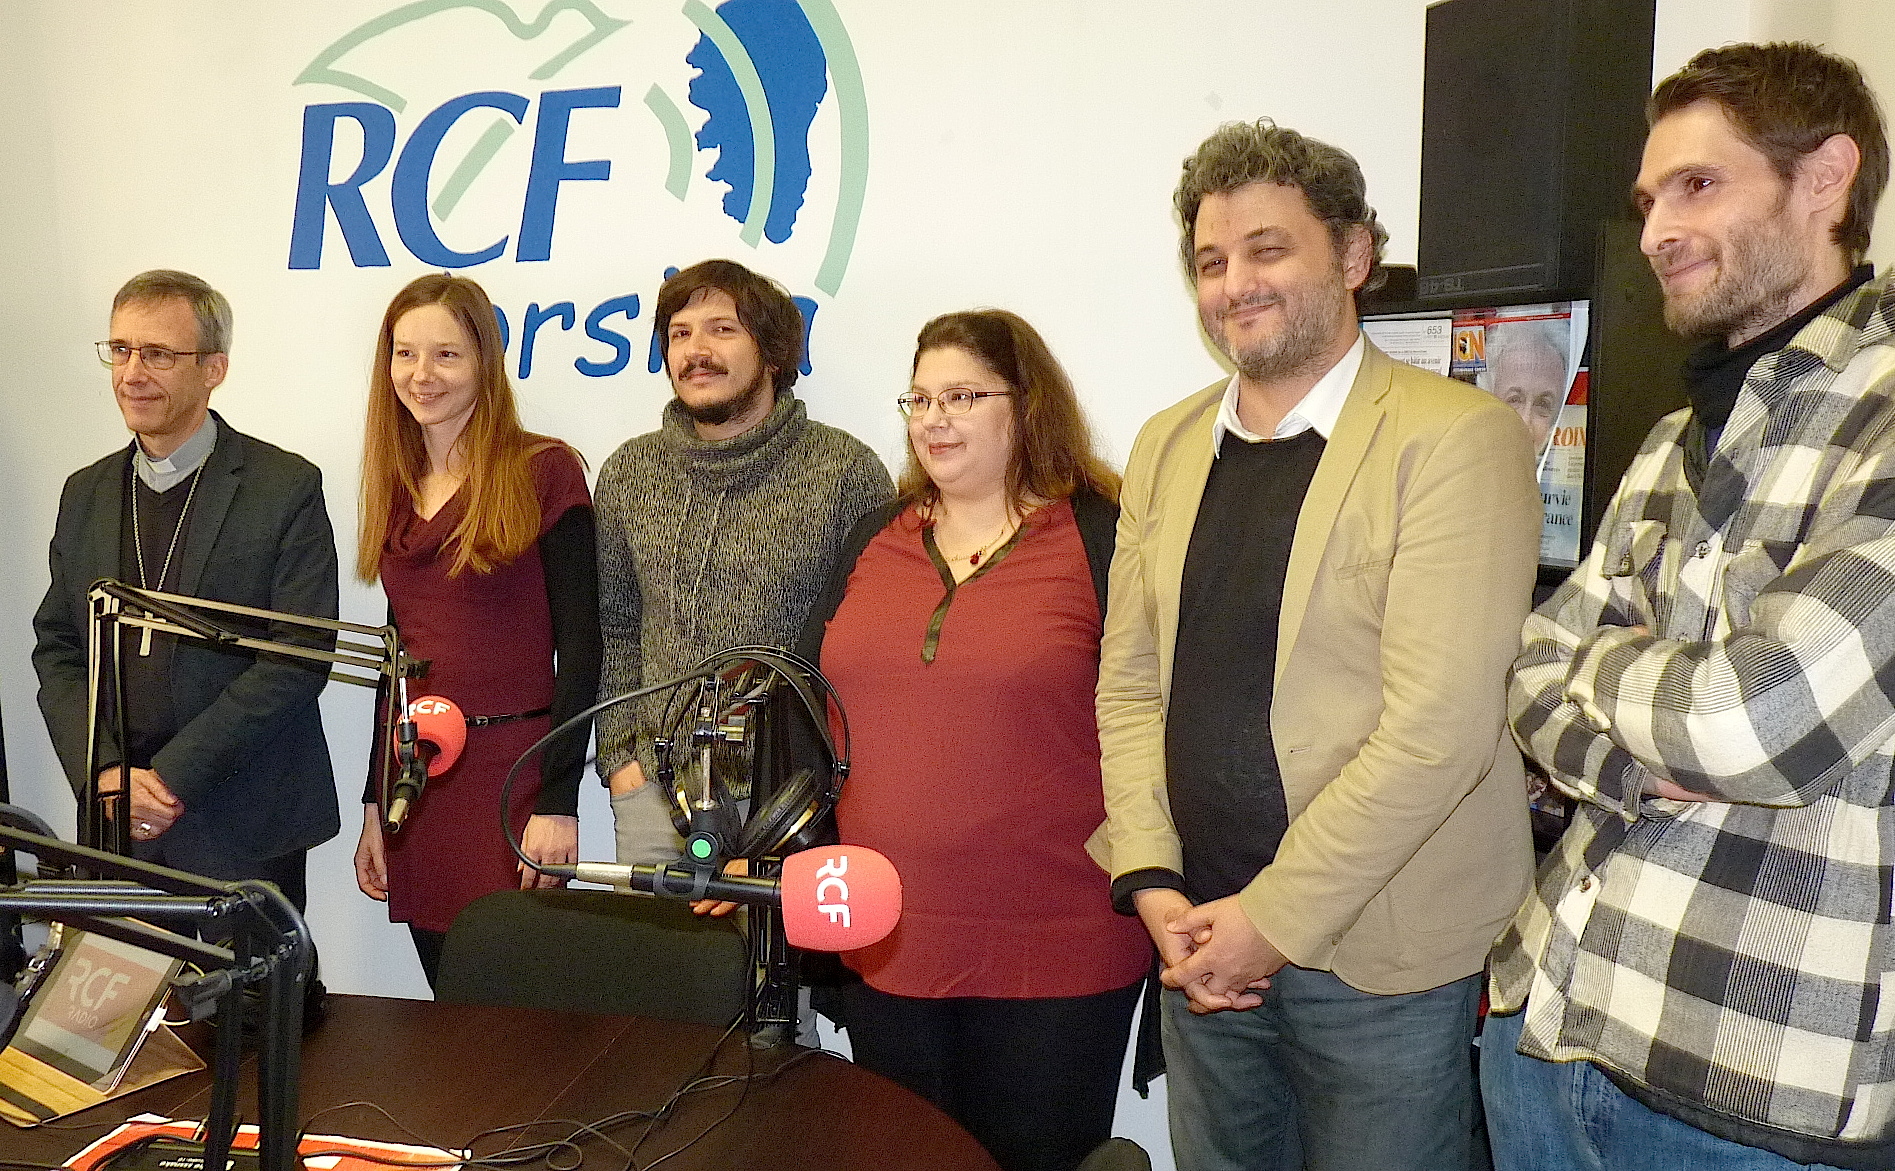 RCF Corsica et la semaine du don (21/27 novembre) : Pour être au plus près des auditeurs